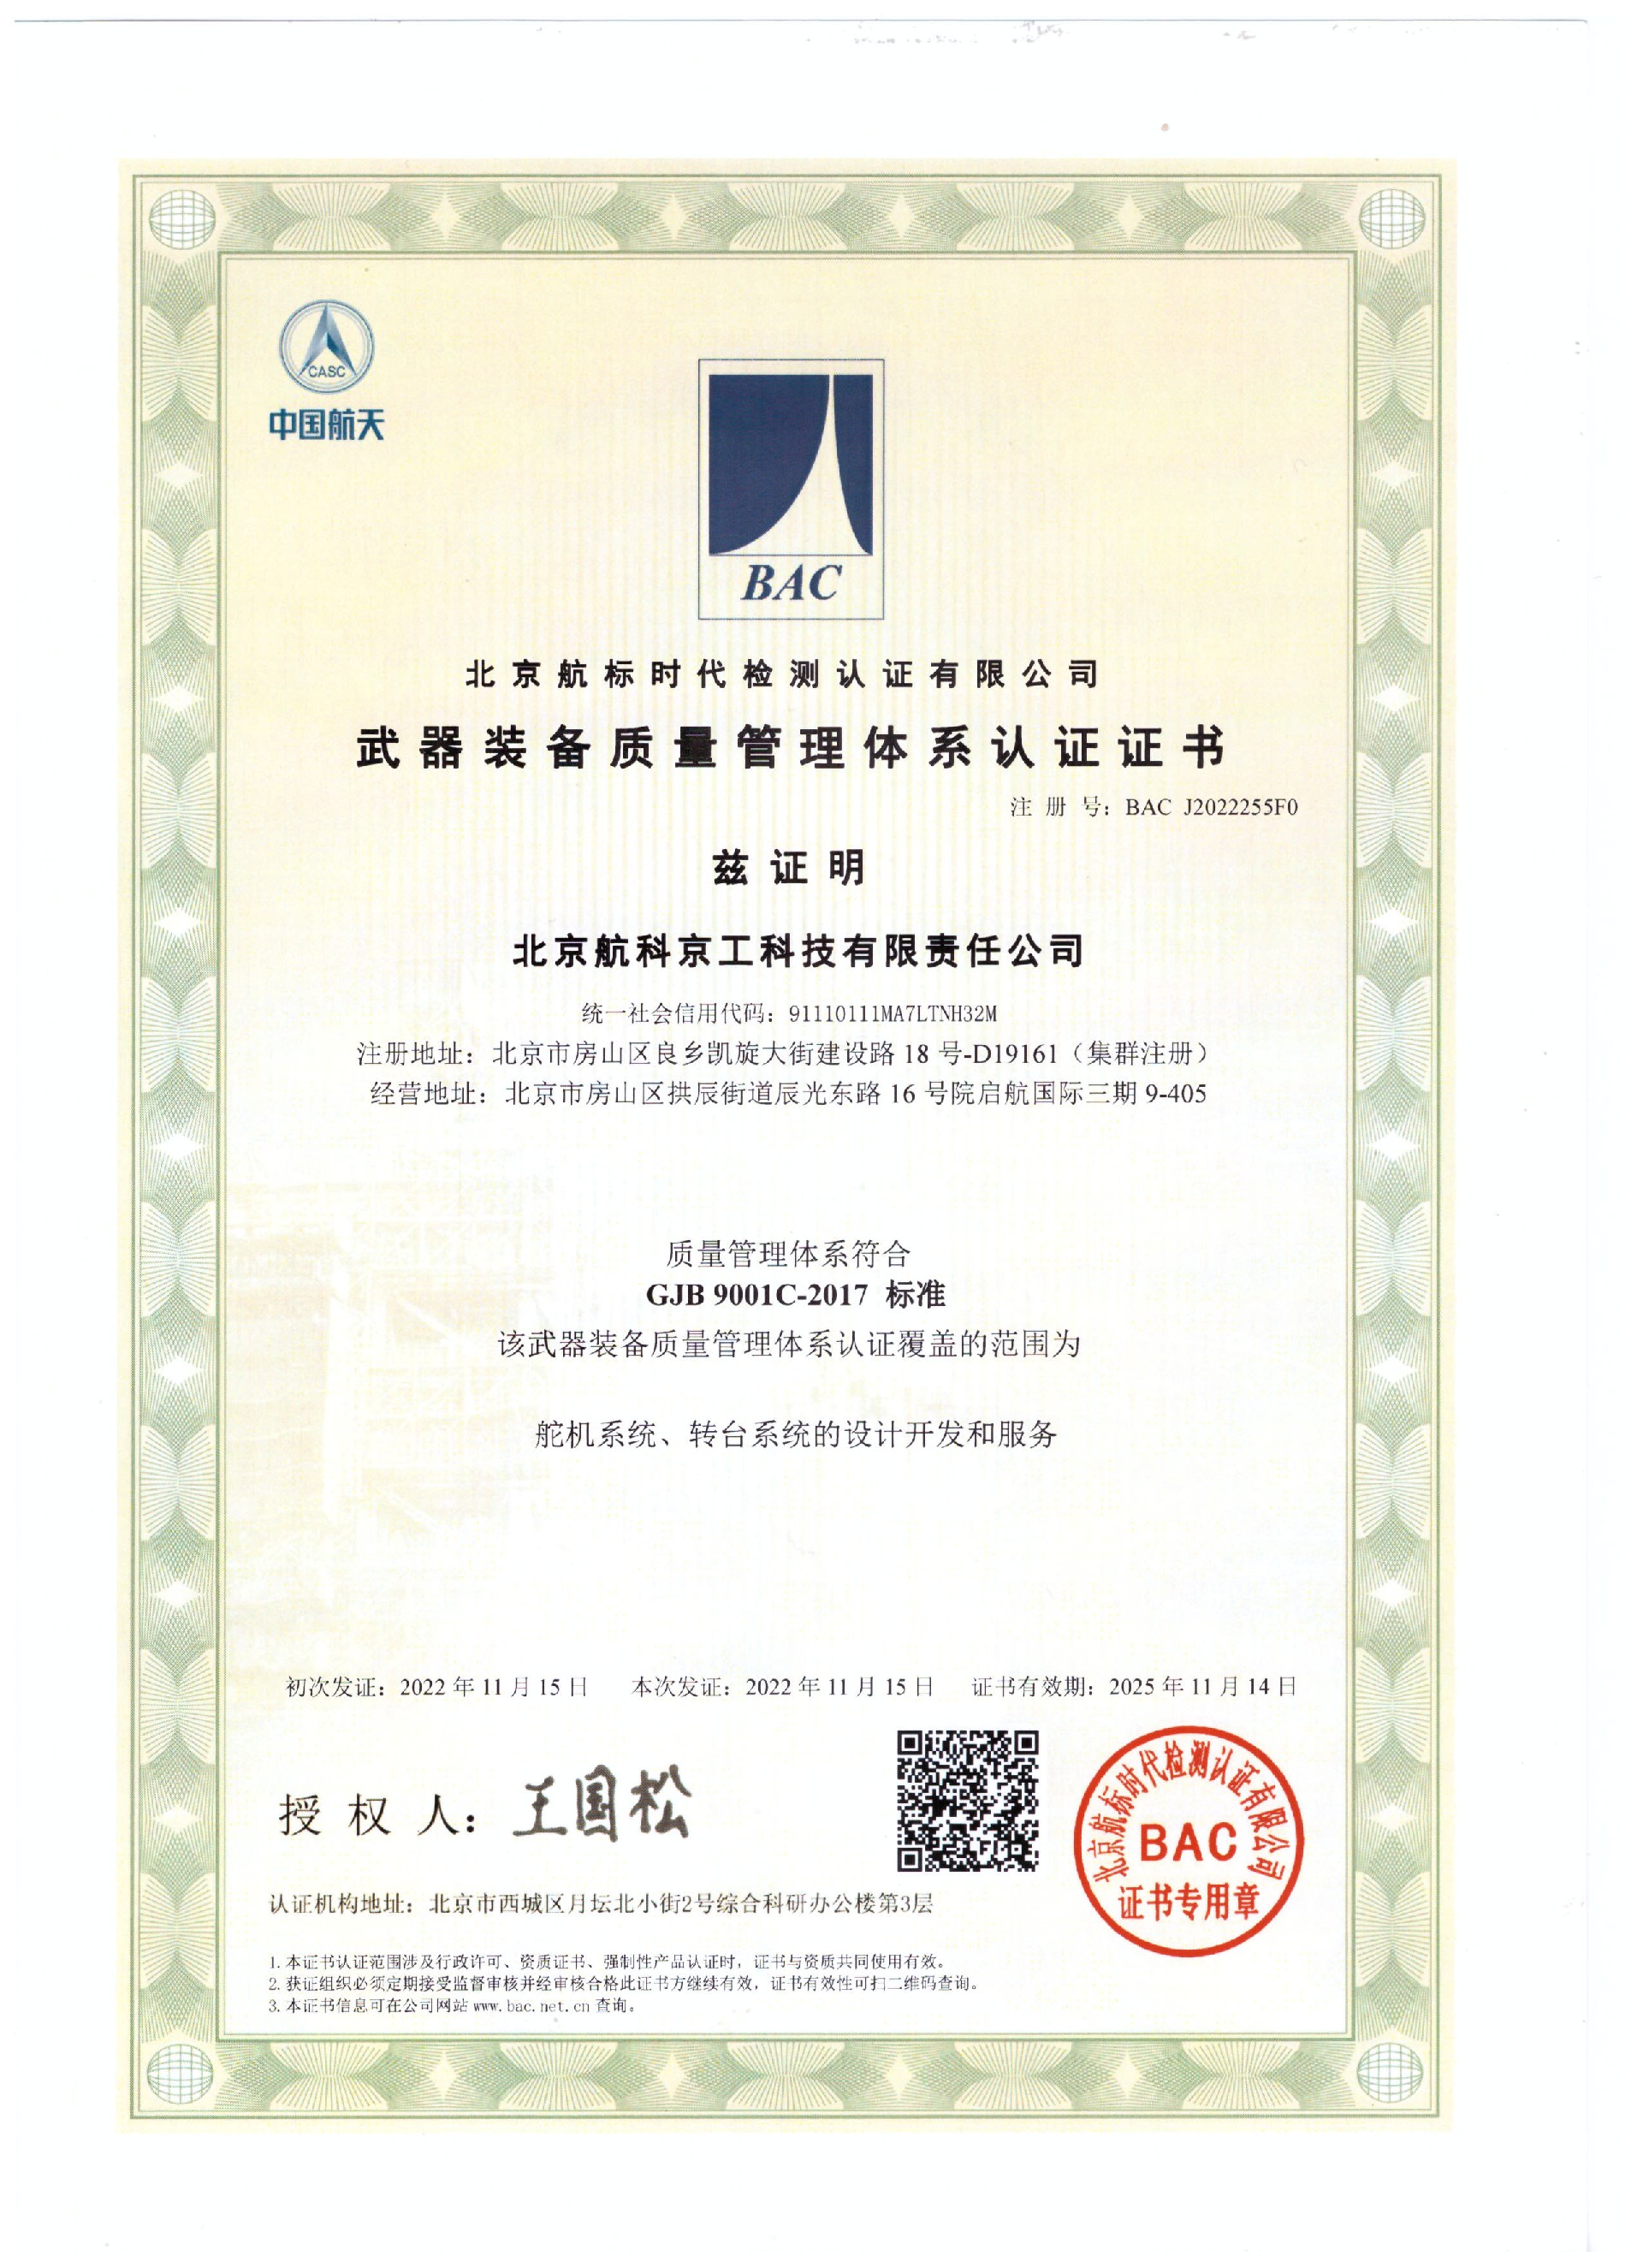 北京航科京工科技有限责任公司-G证书（武器装备质量管理体系认证证书）-中文.jpg